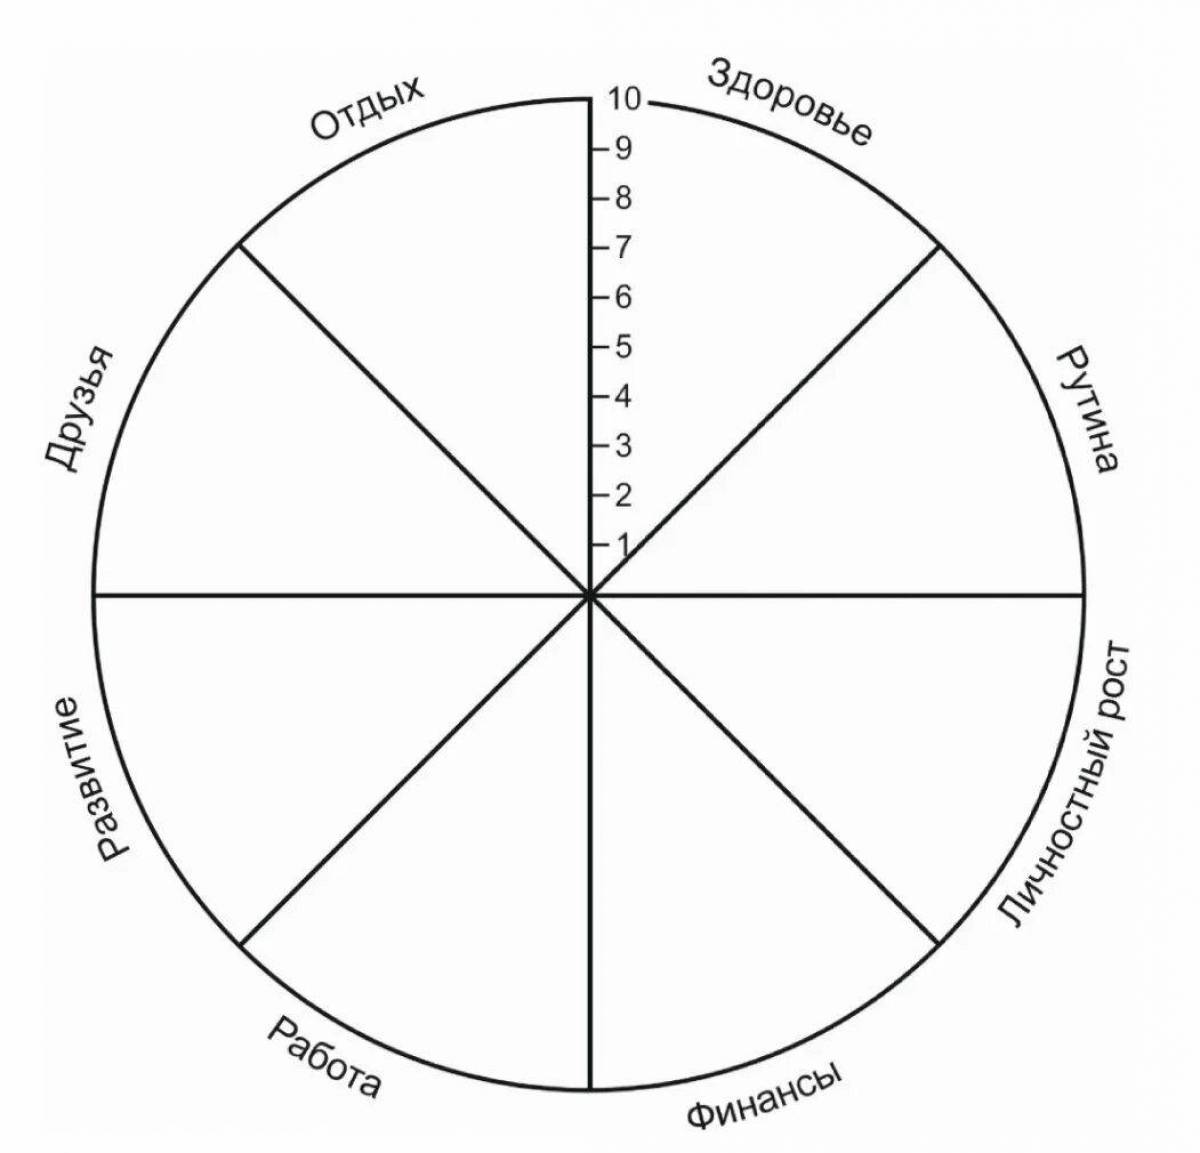 Круг основных интересов. Колесо жизненного баланса 8 сфер. Схема колеса жизненного баланса. Коле/о жизненного баланса. Колесо жизни, баланс жизни (8 основных сфер).